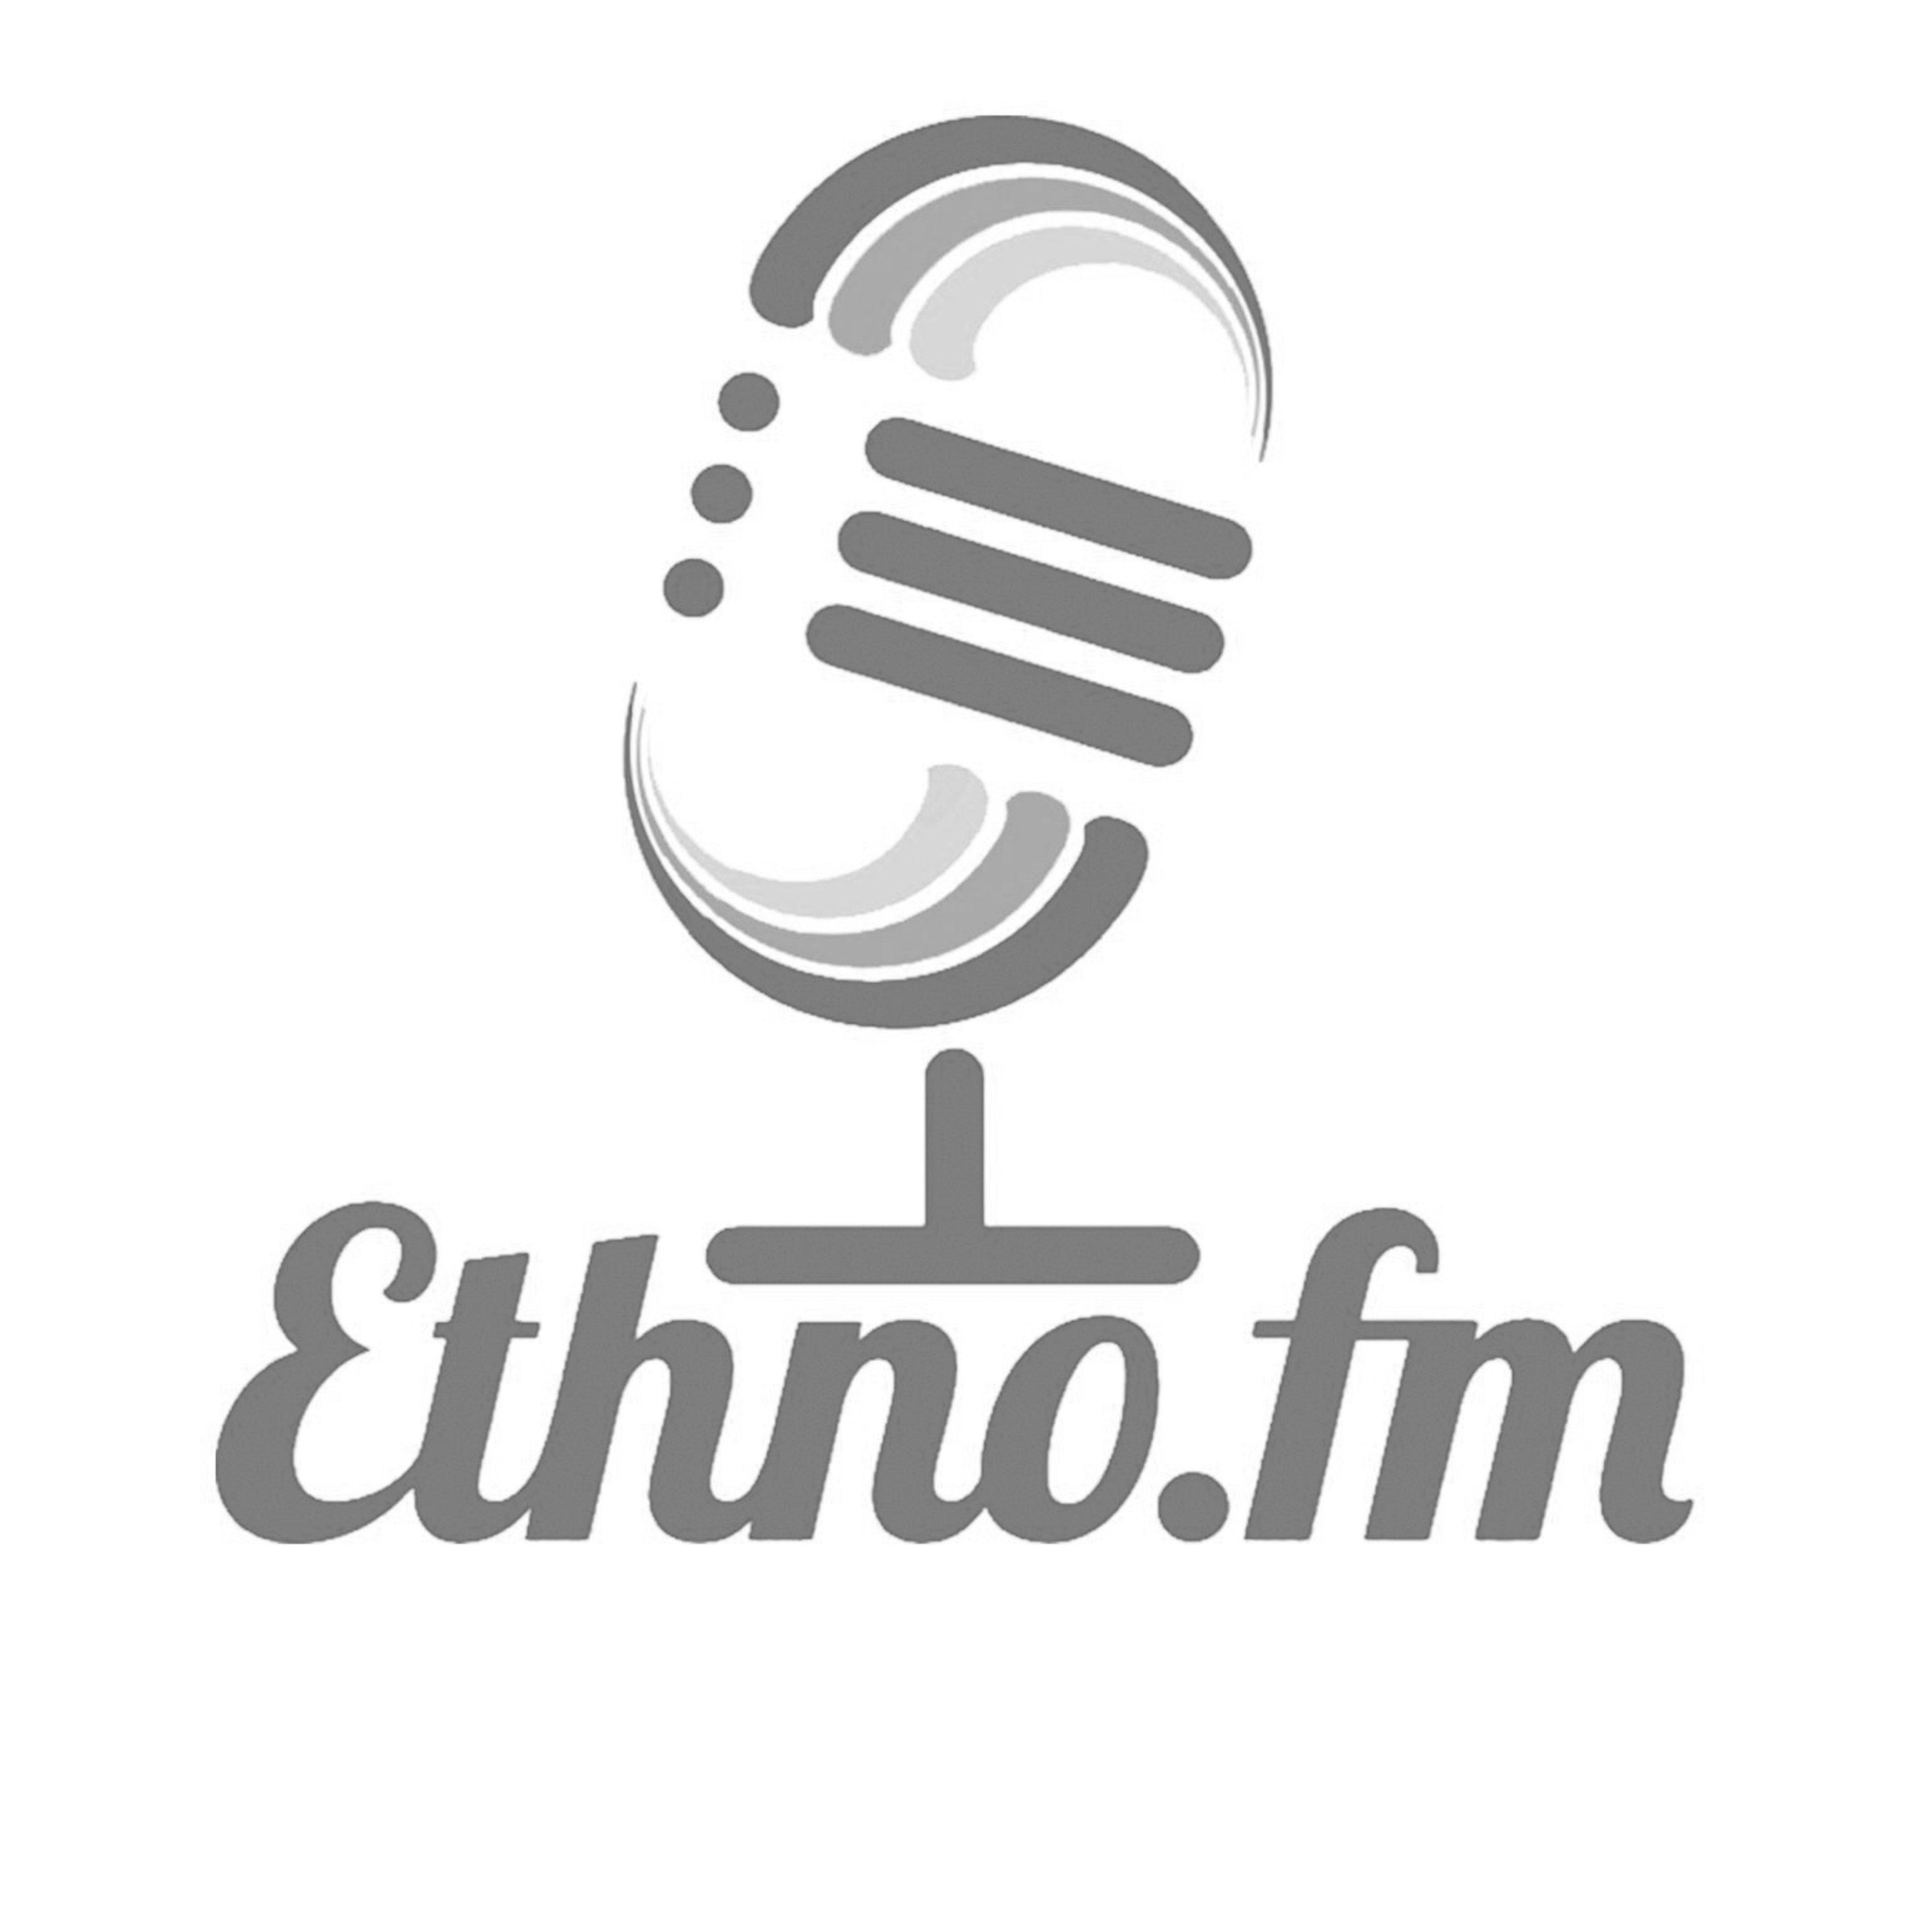 Ethno.fm